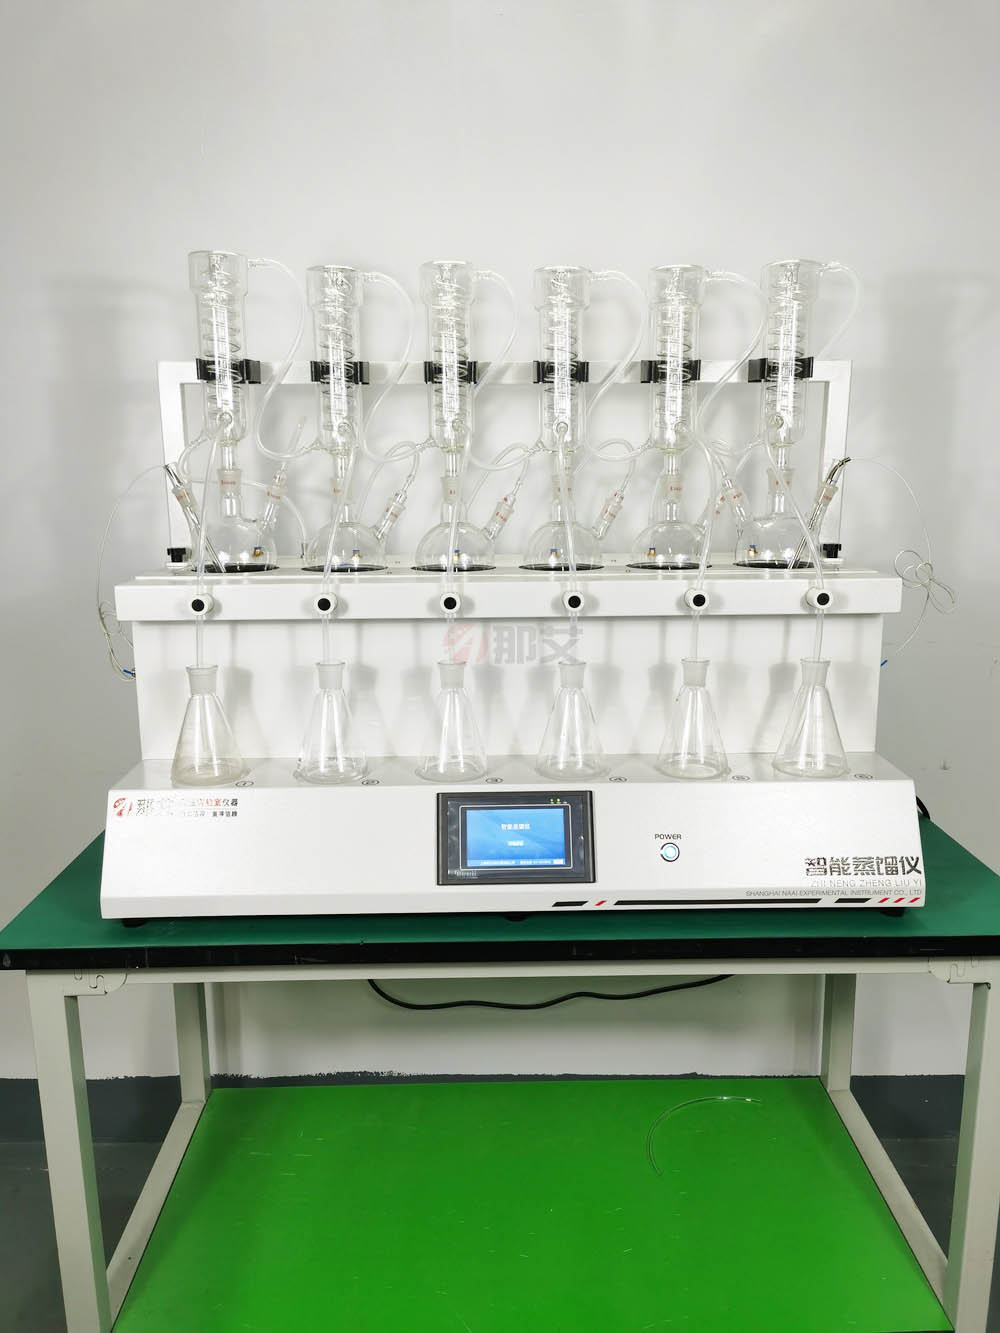 土壤蒸馏仪实验室蒸馏装置仪器 水蒸气蒸馏法装置 水质氨氮的测定蒸馏中和滴定法